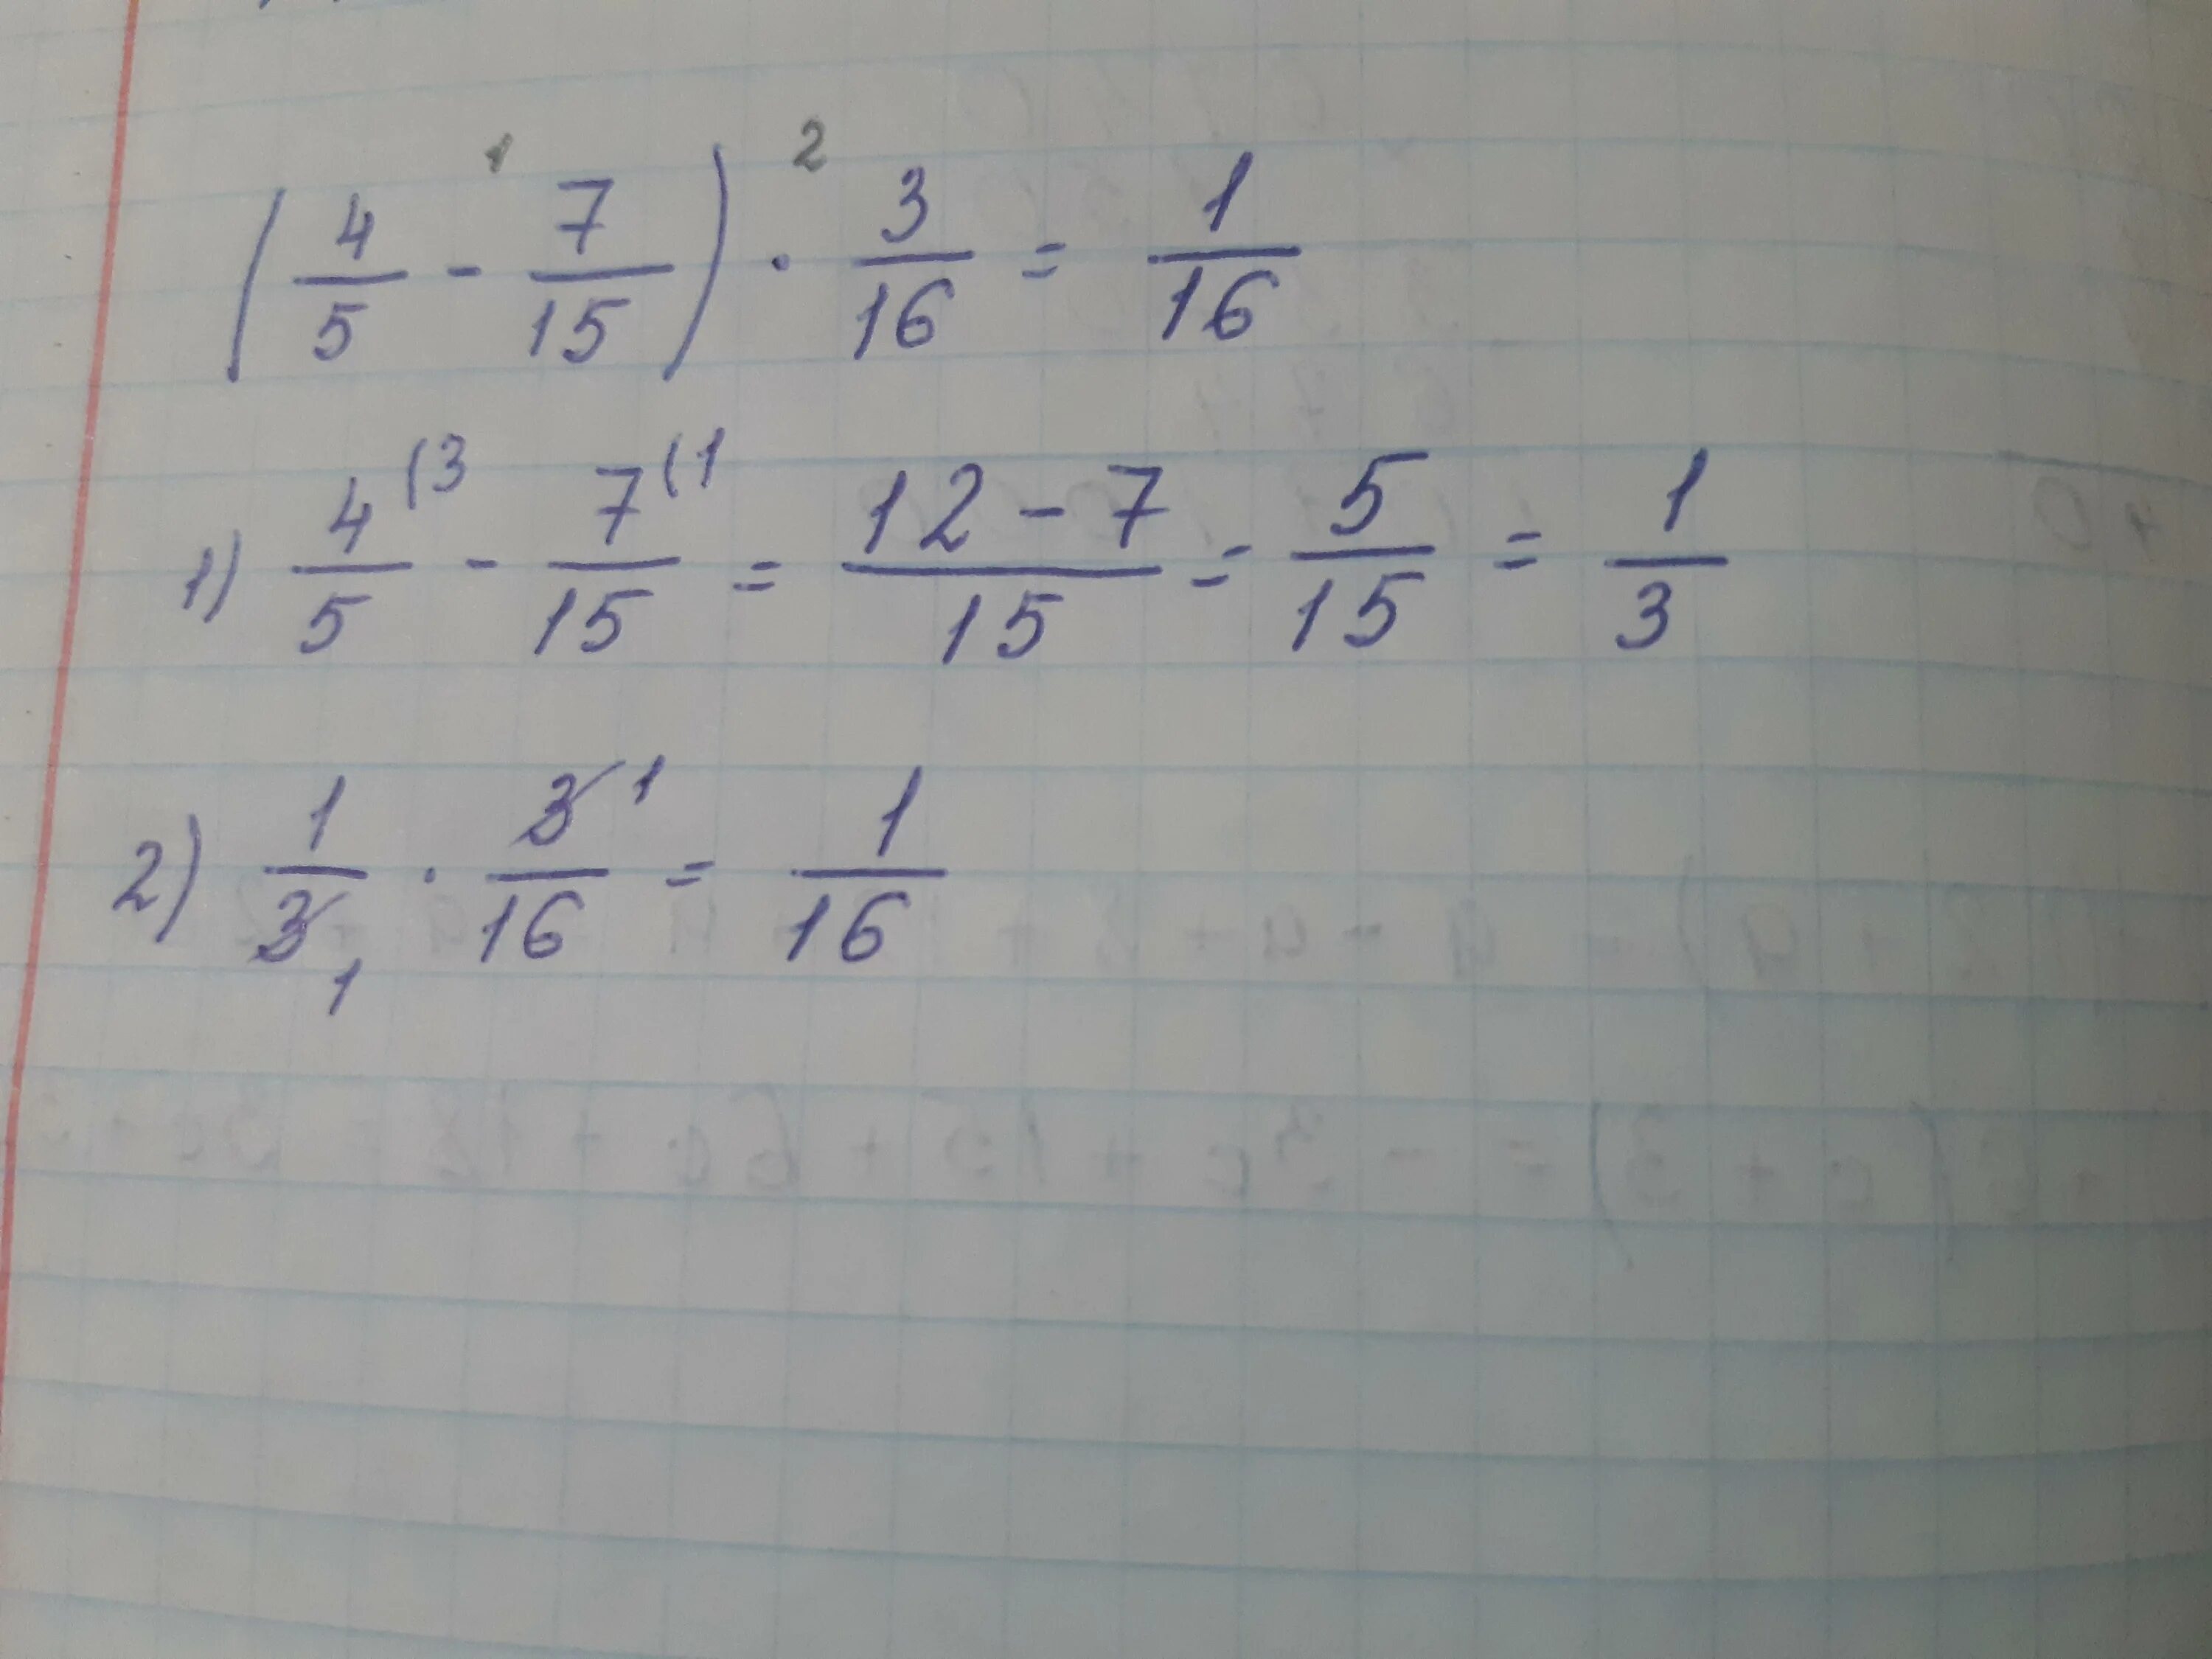 Вычислите 4 16 1 7 2. Вычислите 4,4-4,15. Вычислить 10^-4. Вычислите (4-i)(4+i)-(3+3i)+6. Вычислите 4.167.164.323.2.